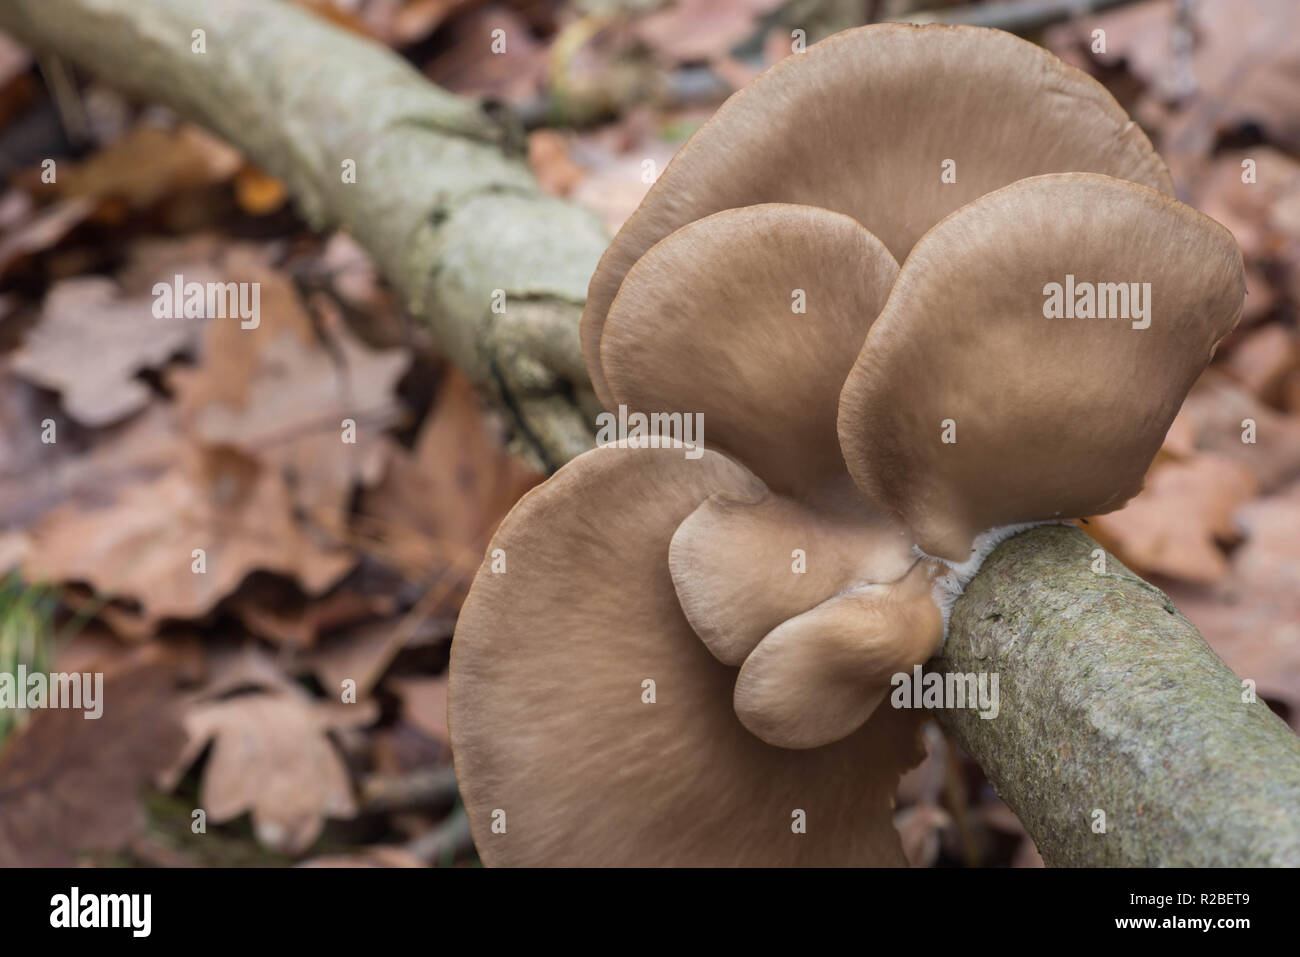 oyster mushroom (Pleurotus ostreatus)  on tree  macro selective focus Stock Photo